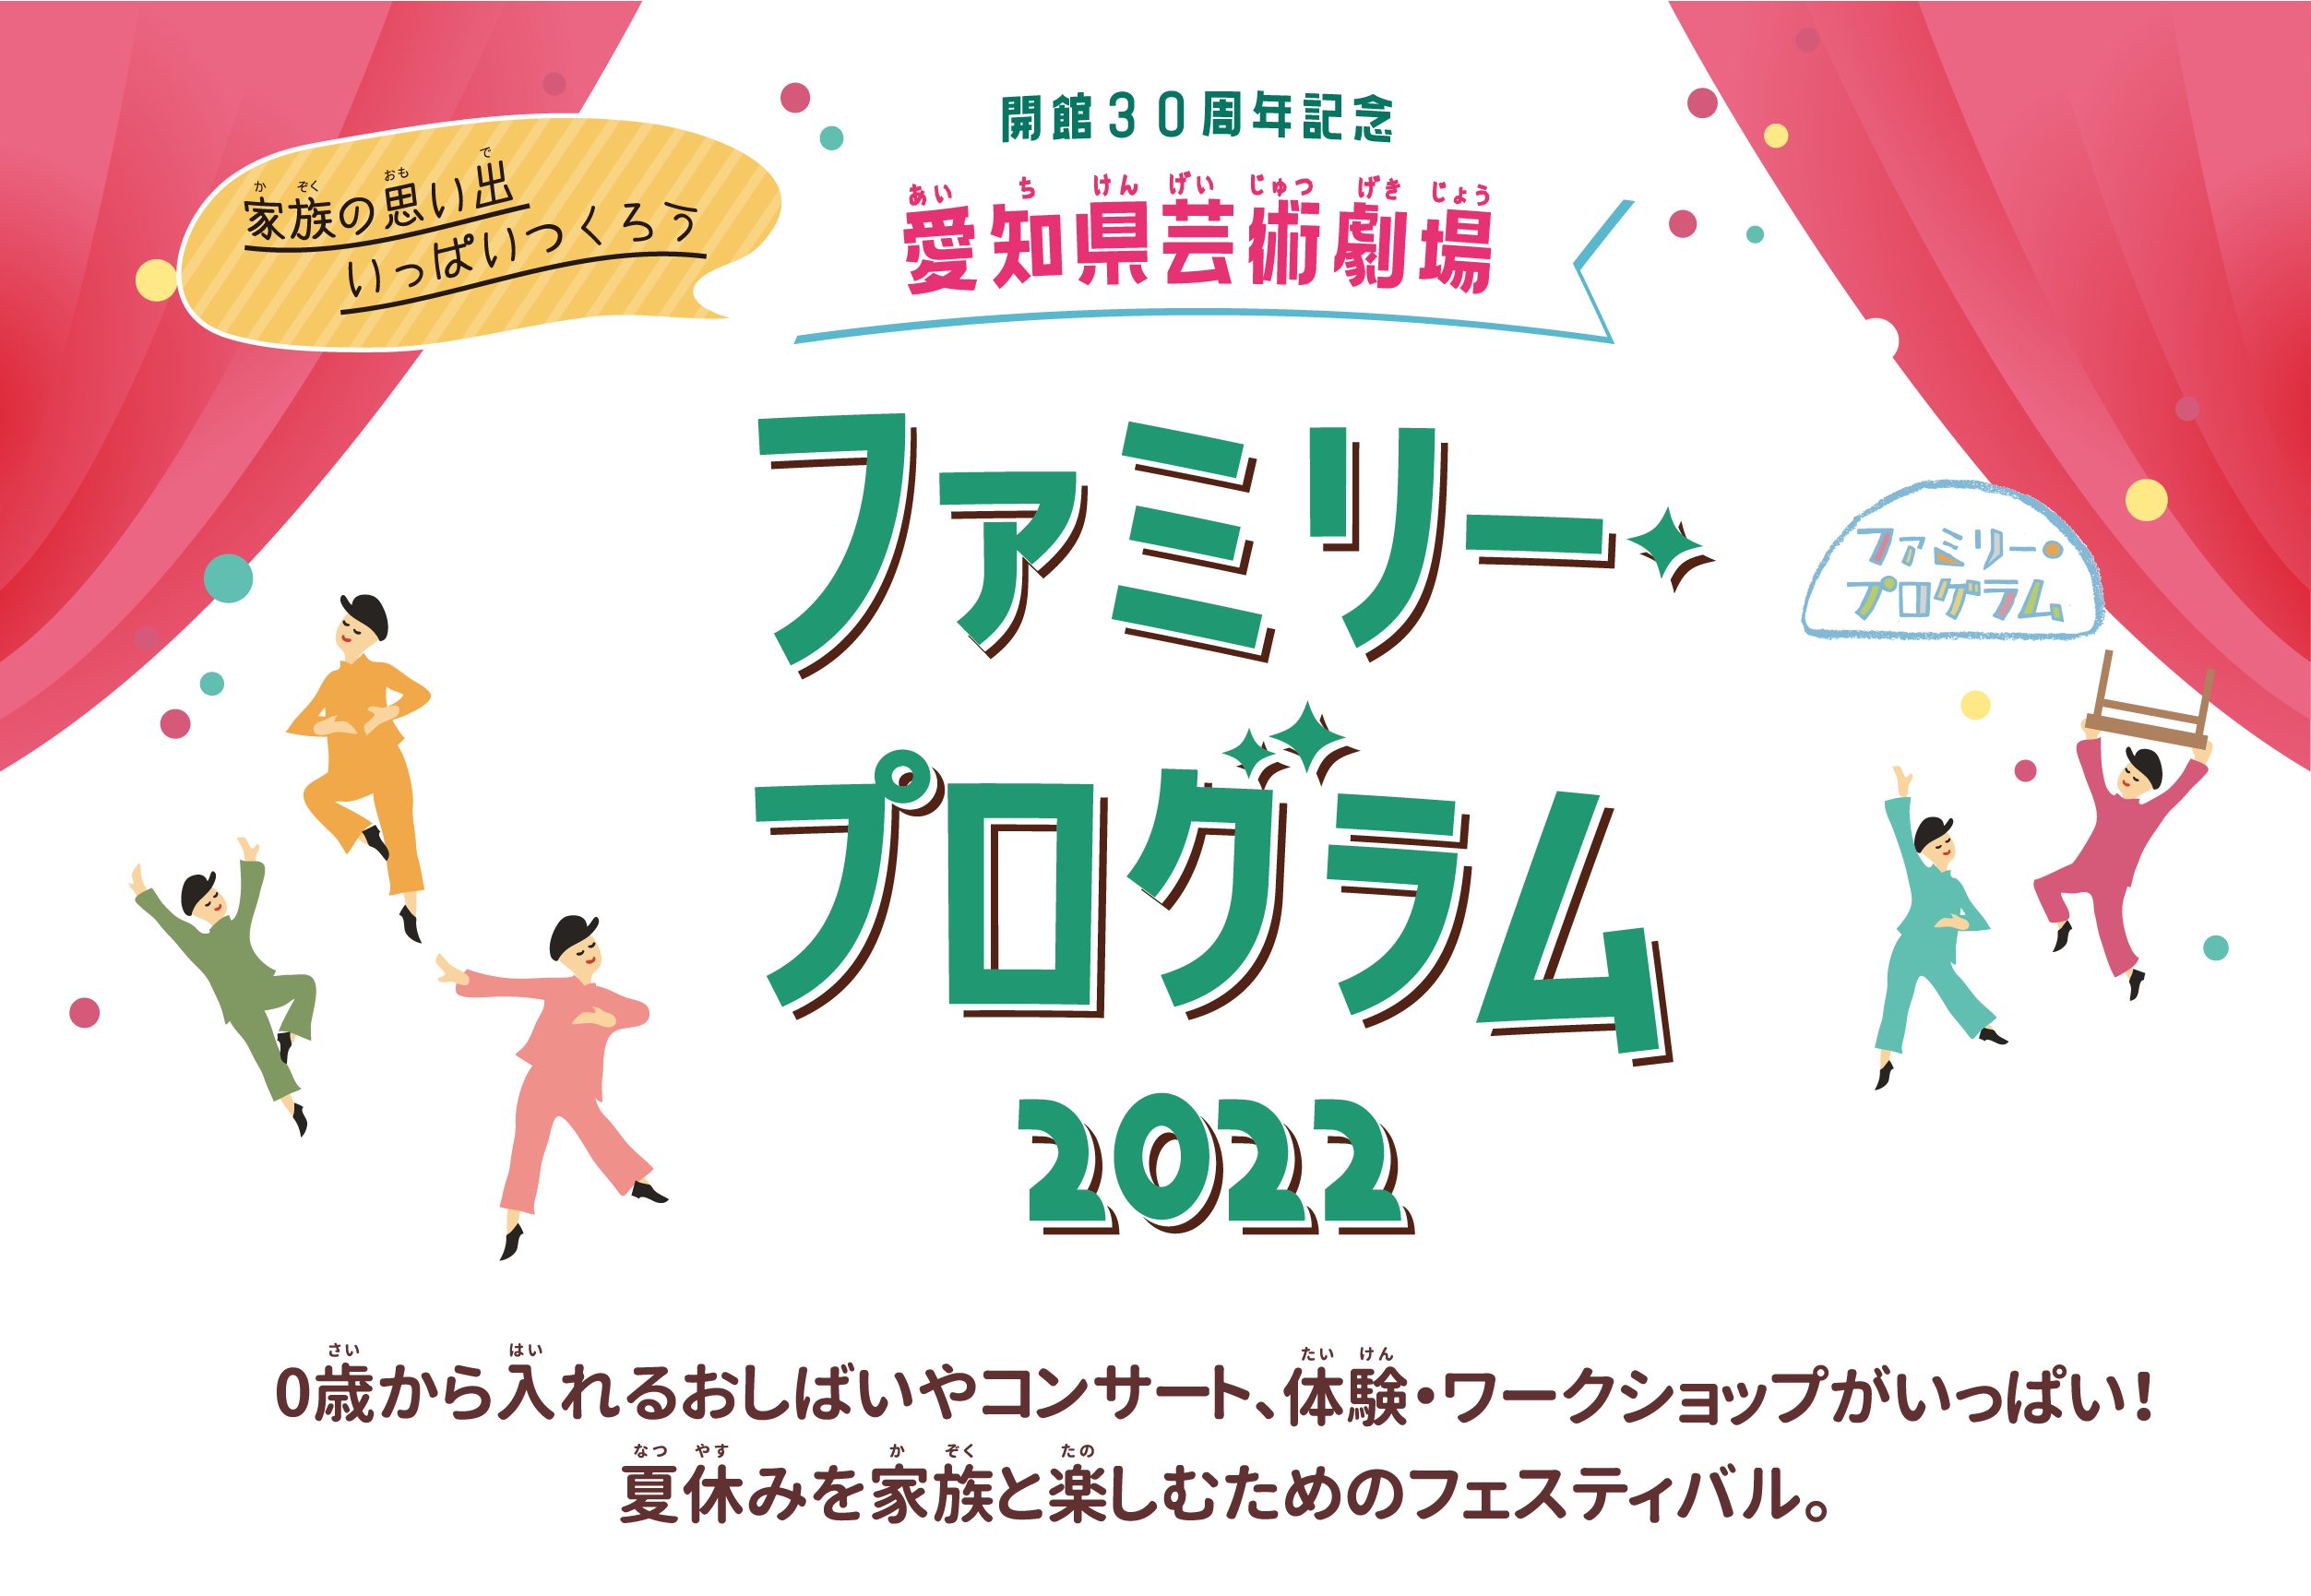 愛知県芸術劇場 ファミリー・プログラム 2022